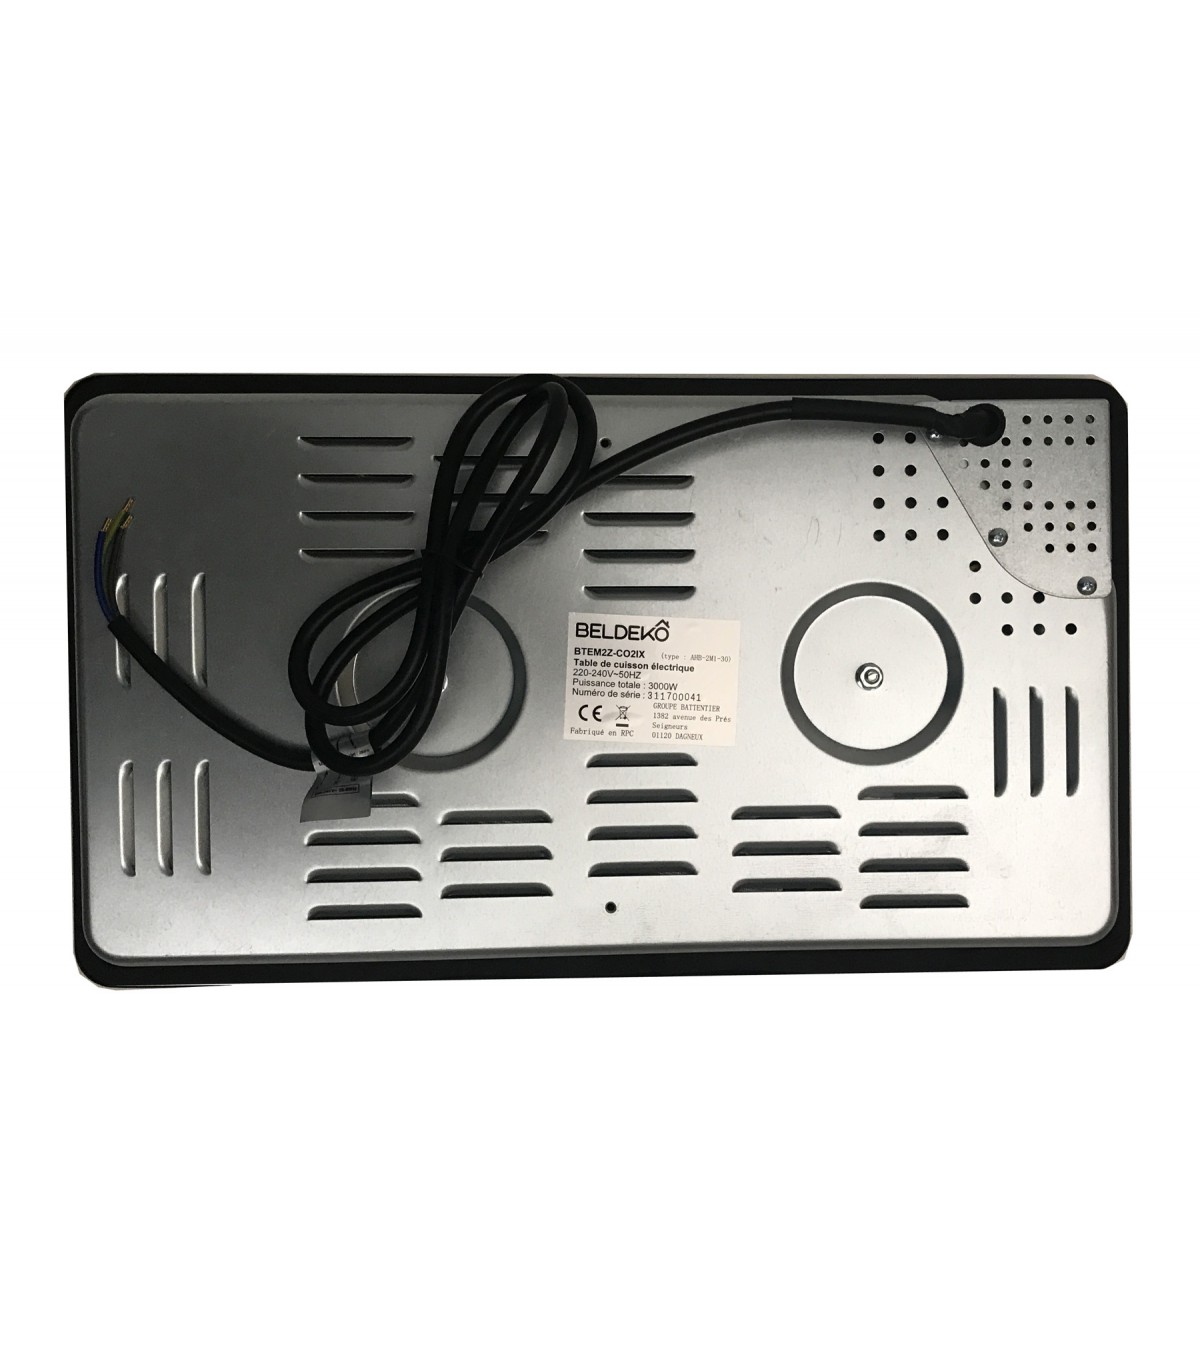 Domino de cuisson électrique 2 feux pour kitchenette 510x288mm à prix mini  - MODERNA Réf.MTAD029Z00